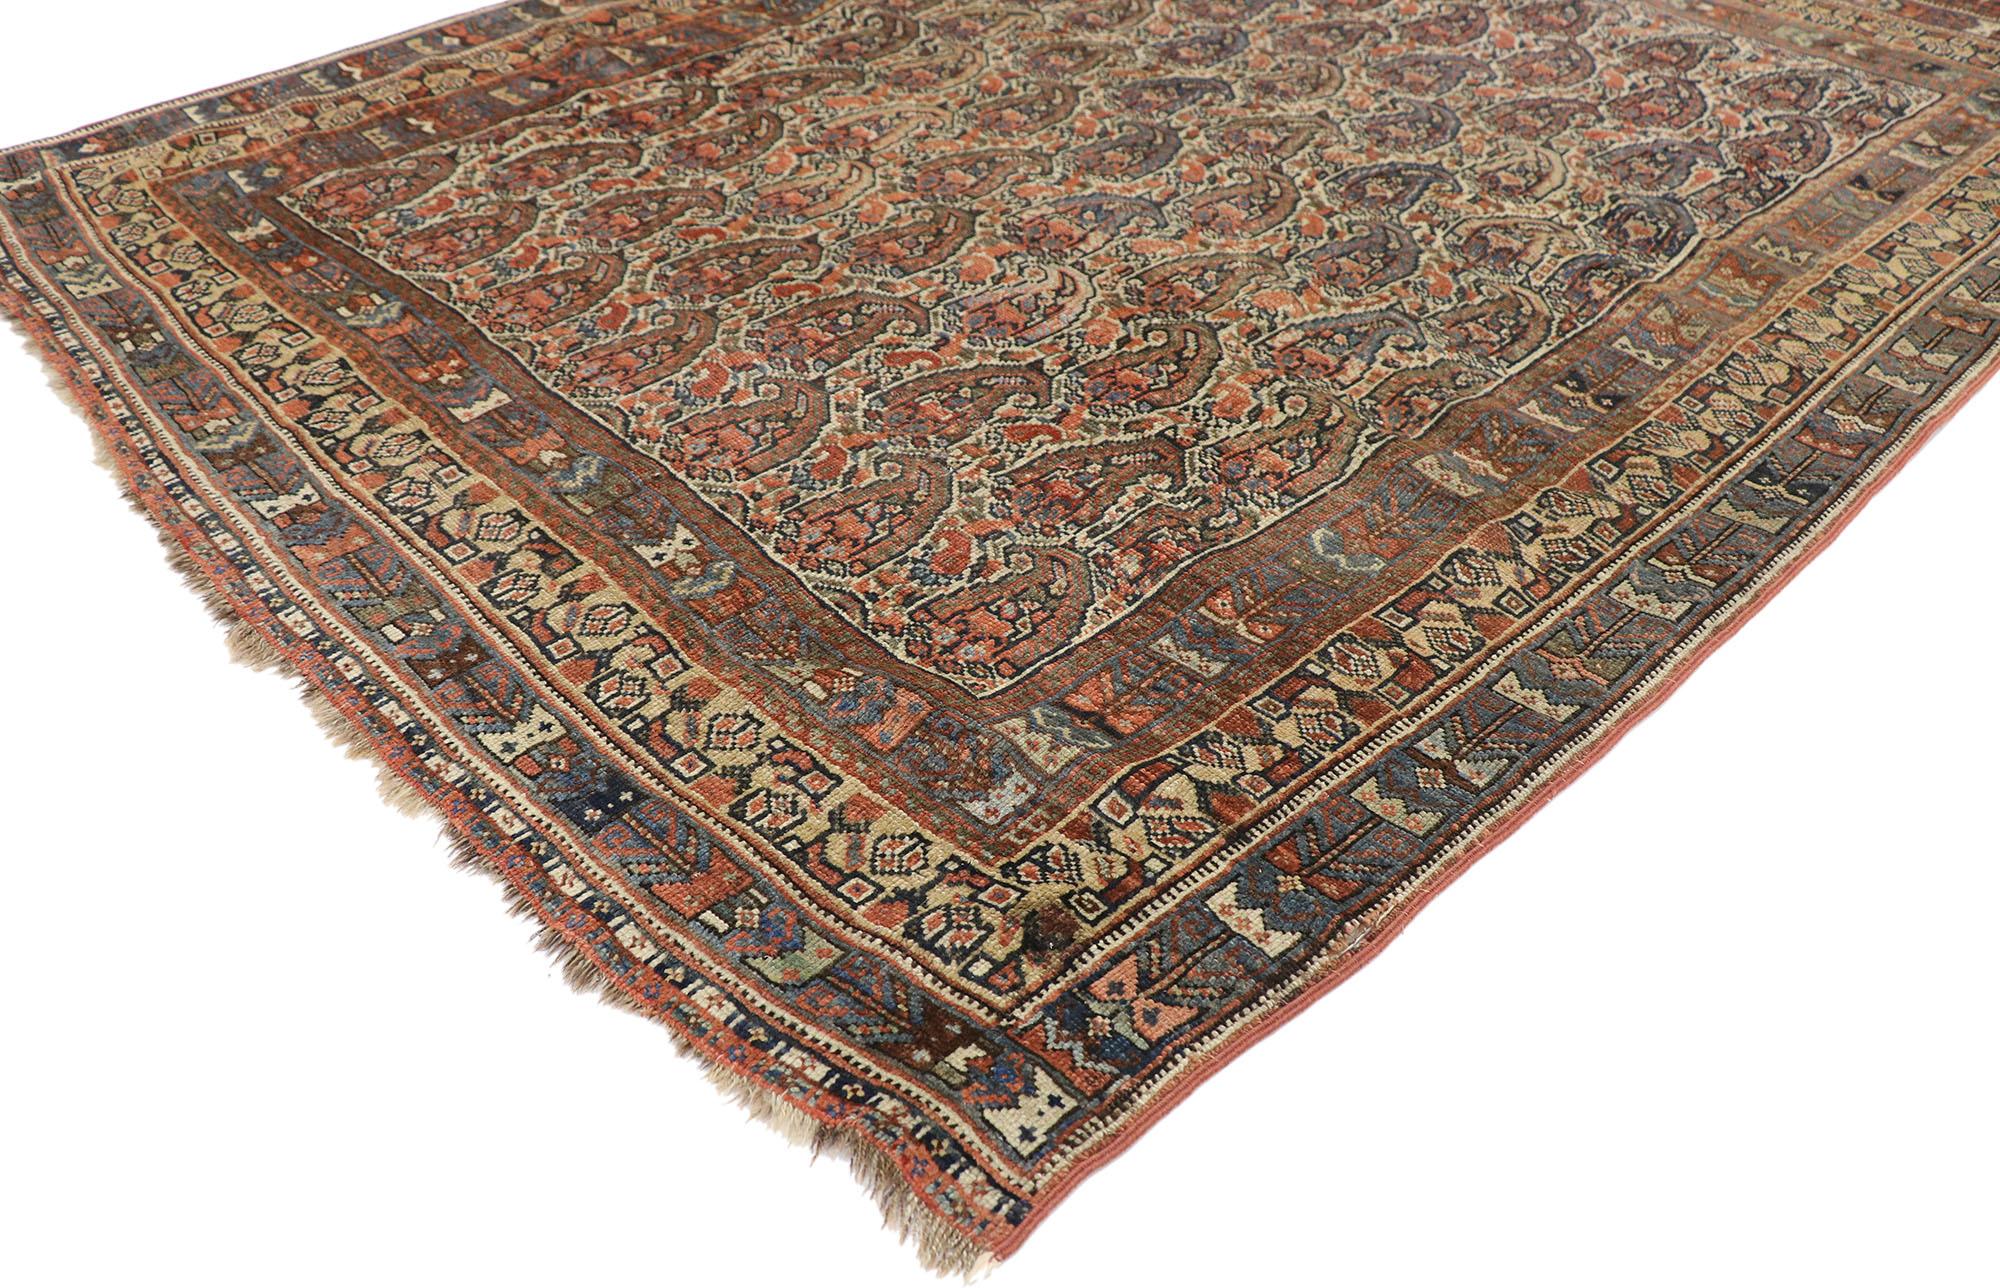 77617 Antiker persischer Shiraz-Teppich mit Boteh-Muster und modernem rustikalem Stil. Warm und einladend mit rustikaler Sensibilität, zeigt dieser handgeknüpfte Wollteppich ein sich überall wiederholendes Muster aus opulenten Mir-a-Boteh-Motiven,